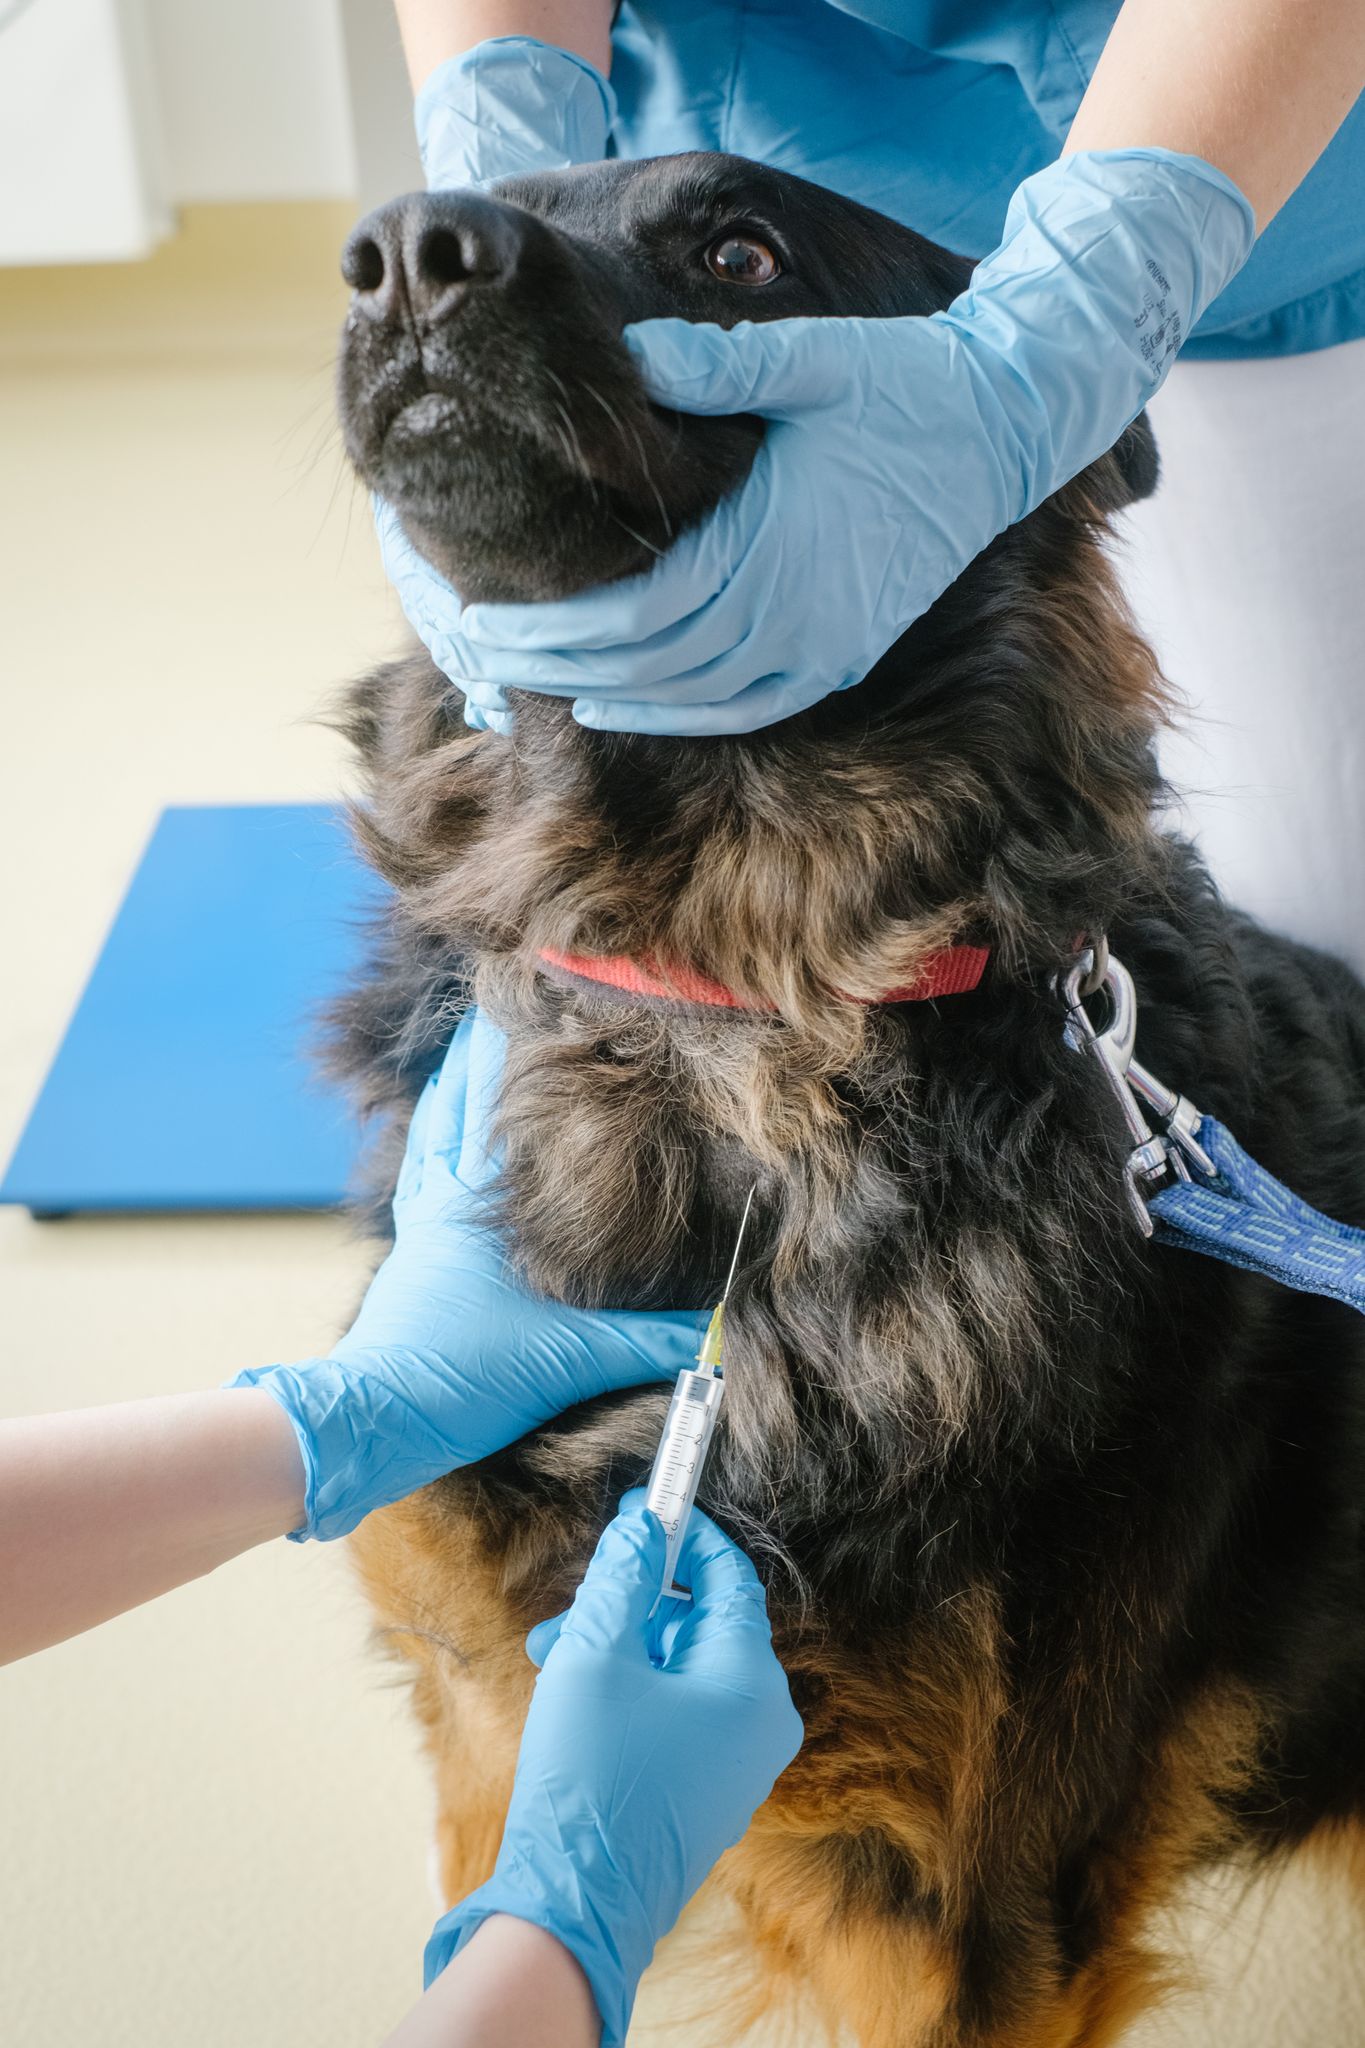  El Dog Aging Project busca retrasar el envejecimiento canino utilizando rapamicina, una droga que se aplicó en otros animales